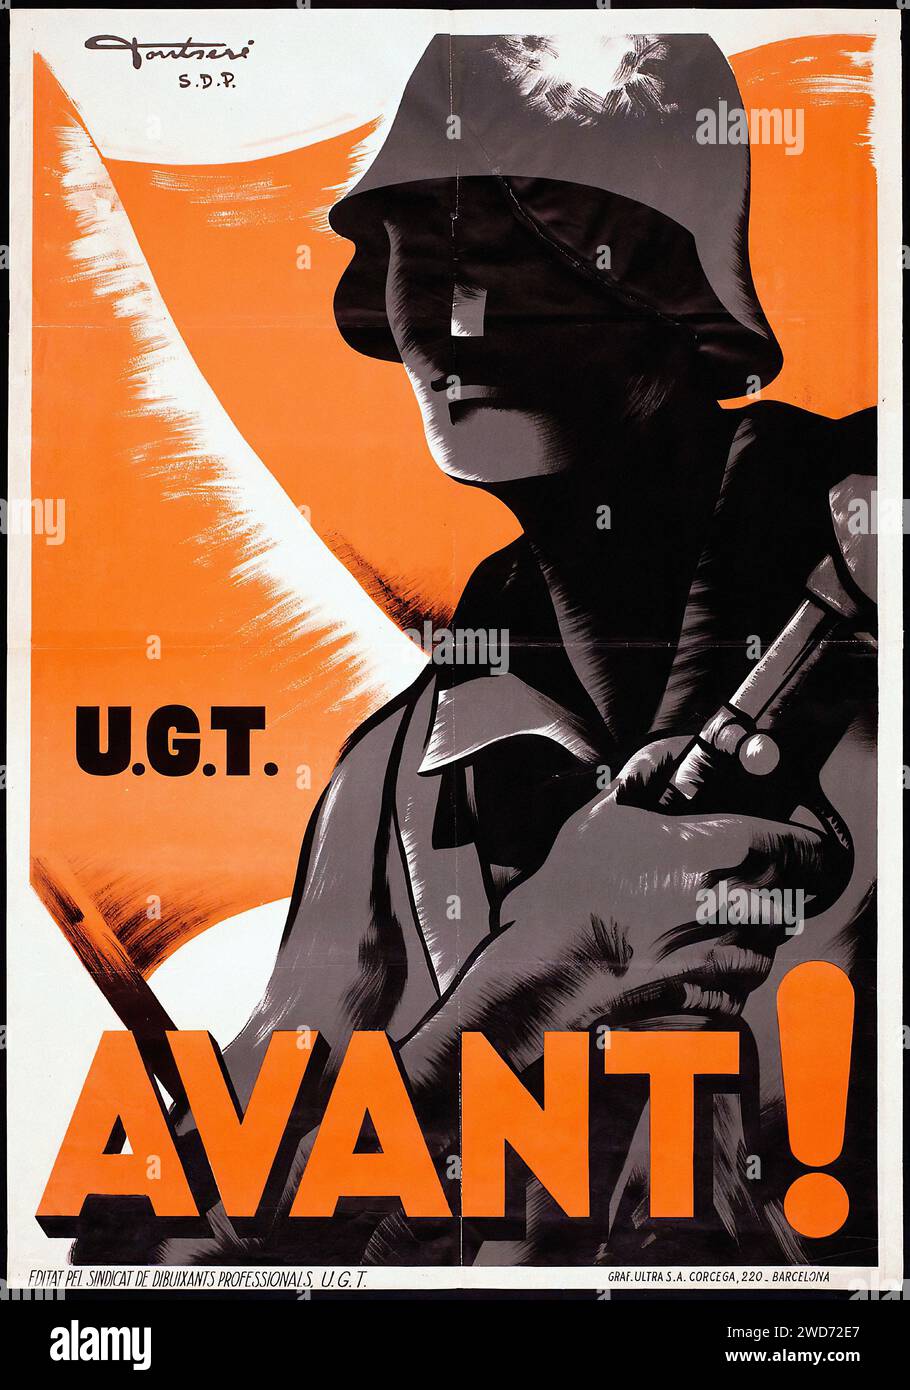 '¡AVANZA ! U.G.T.' 'FORWARD! U.G.T.' cette image est une affiche de propagande de la guerre civile espagnole qui présente une représentation graphique audacieuse d'un soldat avec un poing serré, indiquant un appel à avancer. Le contraste frappant du noir et blanc avec le fond rouge symbolise l'urgence et la ferveur du message U.G.T. Le design est emblématique de la propagande de l'époque, visant à mobiliser et inspirer l'action. - Affiche de propagande de la guerre civile espagnole (Guerra civil Española) Banque D'Images